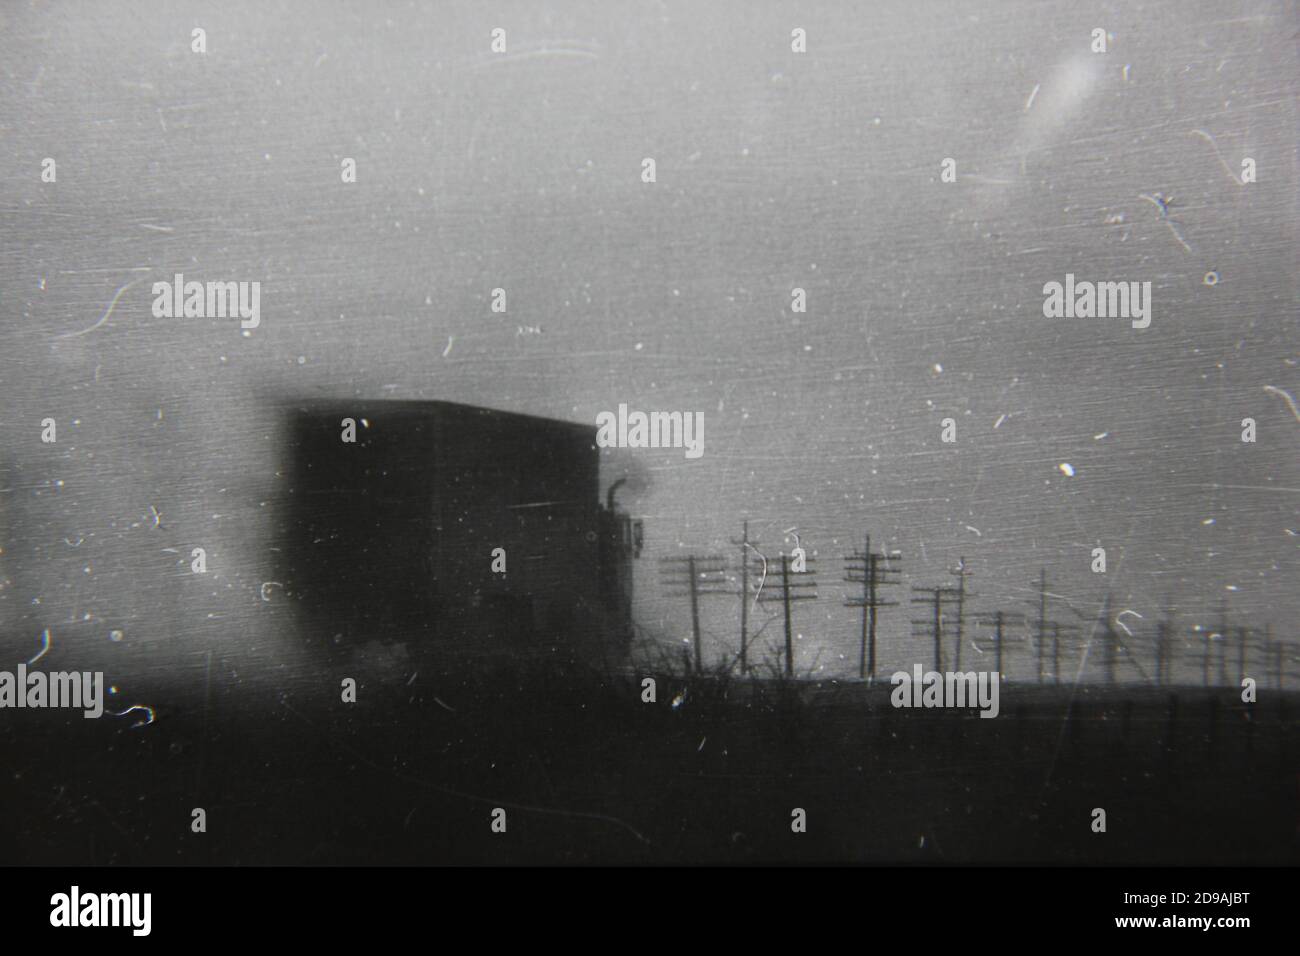 Feine Vintage-Schwarz-Weiß-Fotografie der 1970er Jahre des Nebels und der  Stromleitungen gesehen, während auf der Straße auf einer frühen  Morgenfahrt, während ein LKW-Geschwindigkeit vorbei Stockfotografie - Alamy